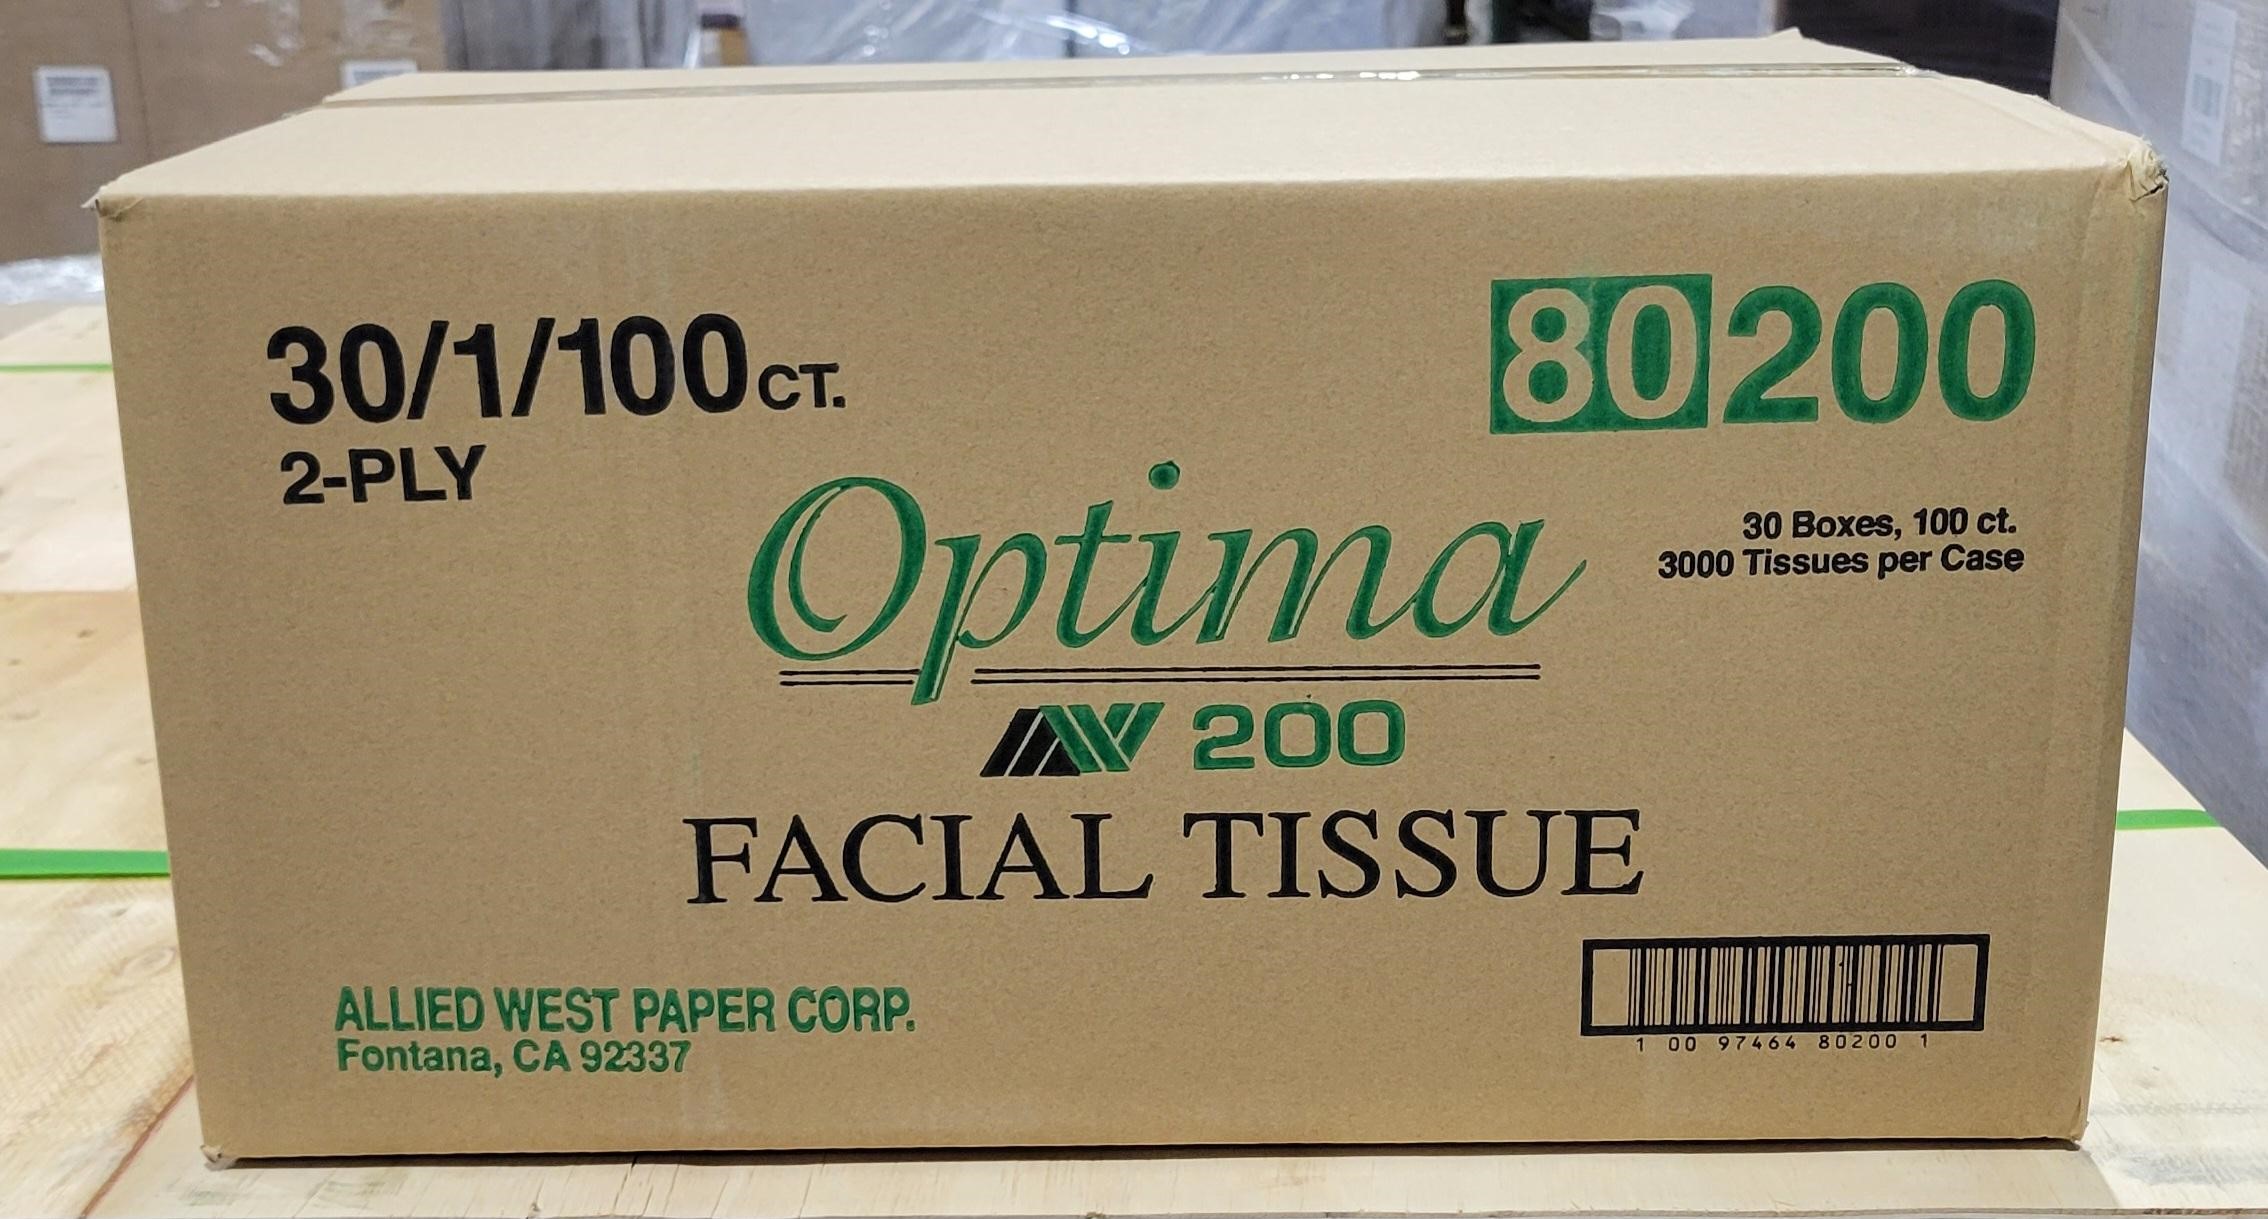 Facial Tissue - Case of 30 boxes